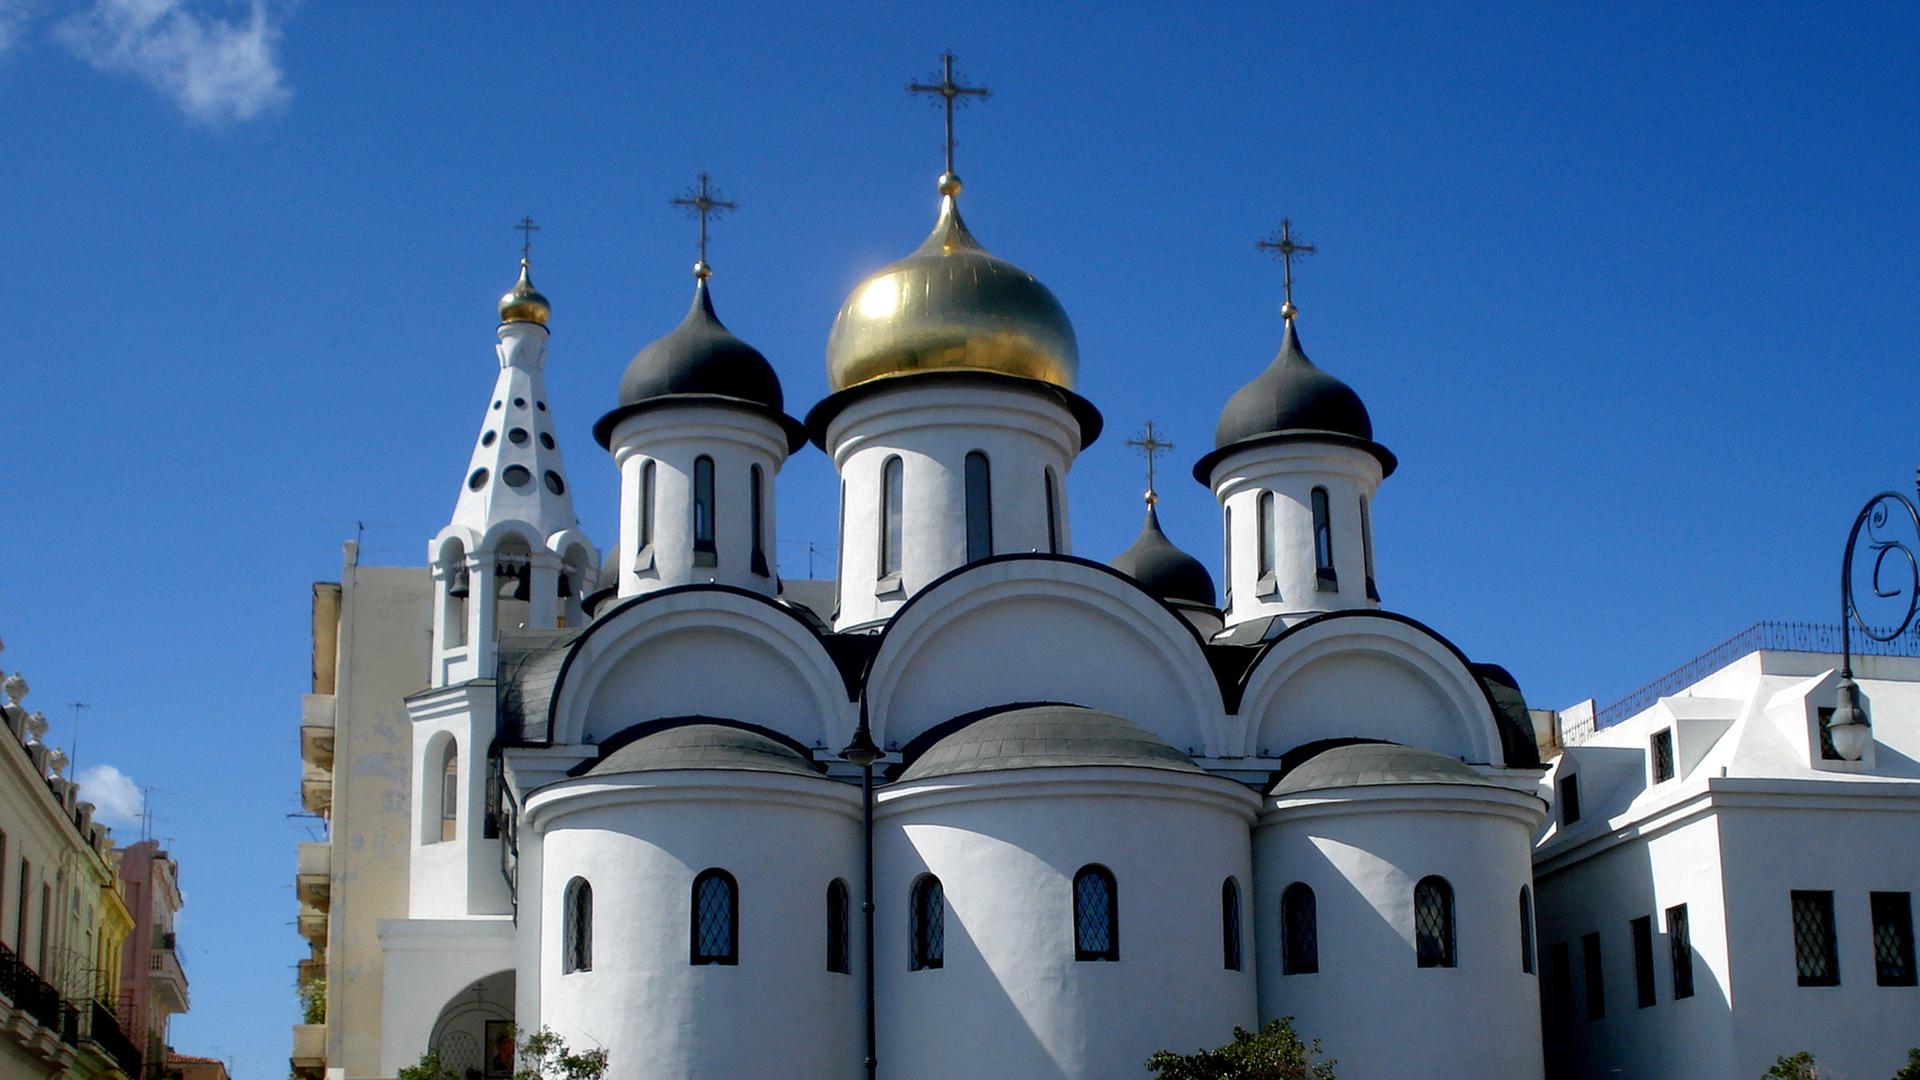 Havannas russisch-orthodoxe Kathedrale